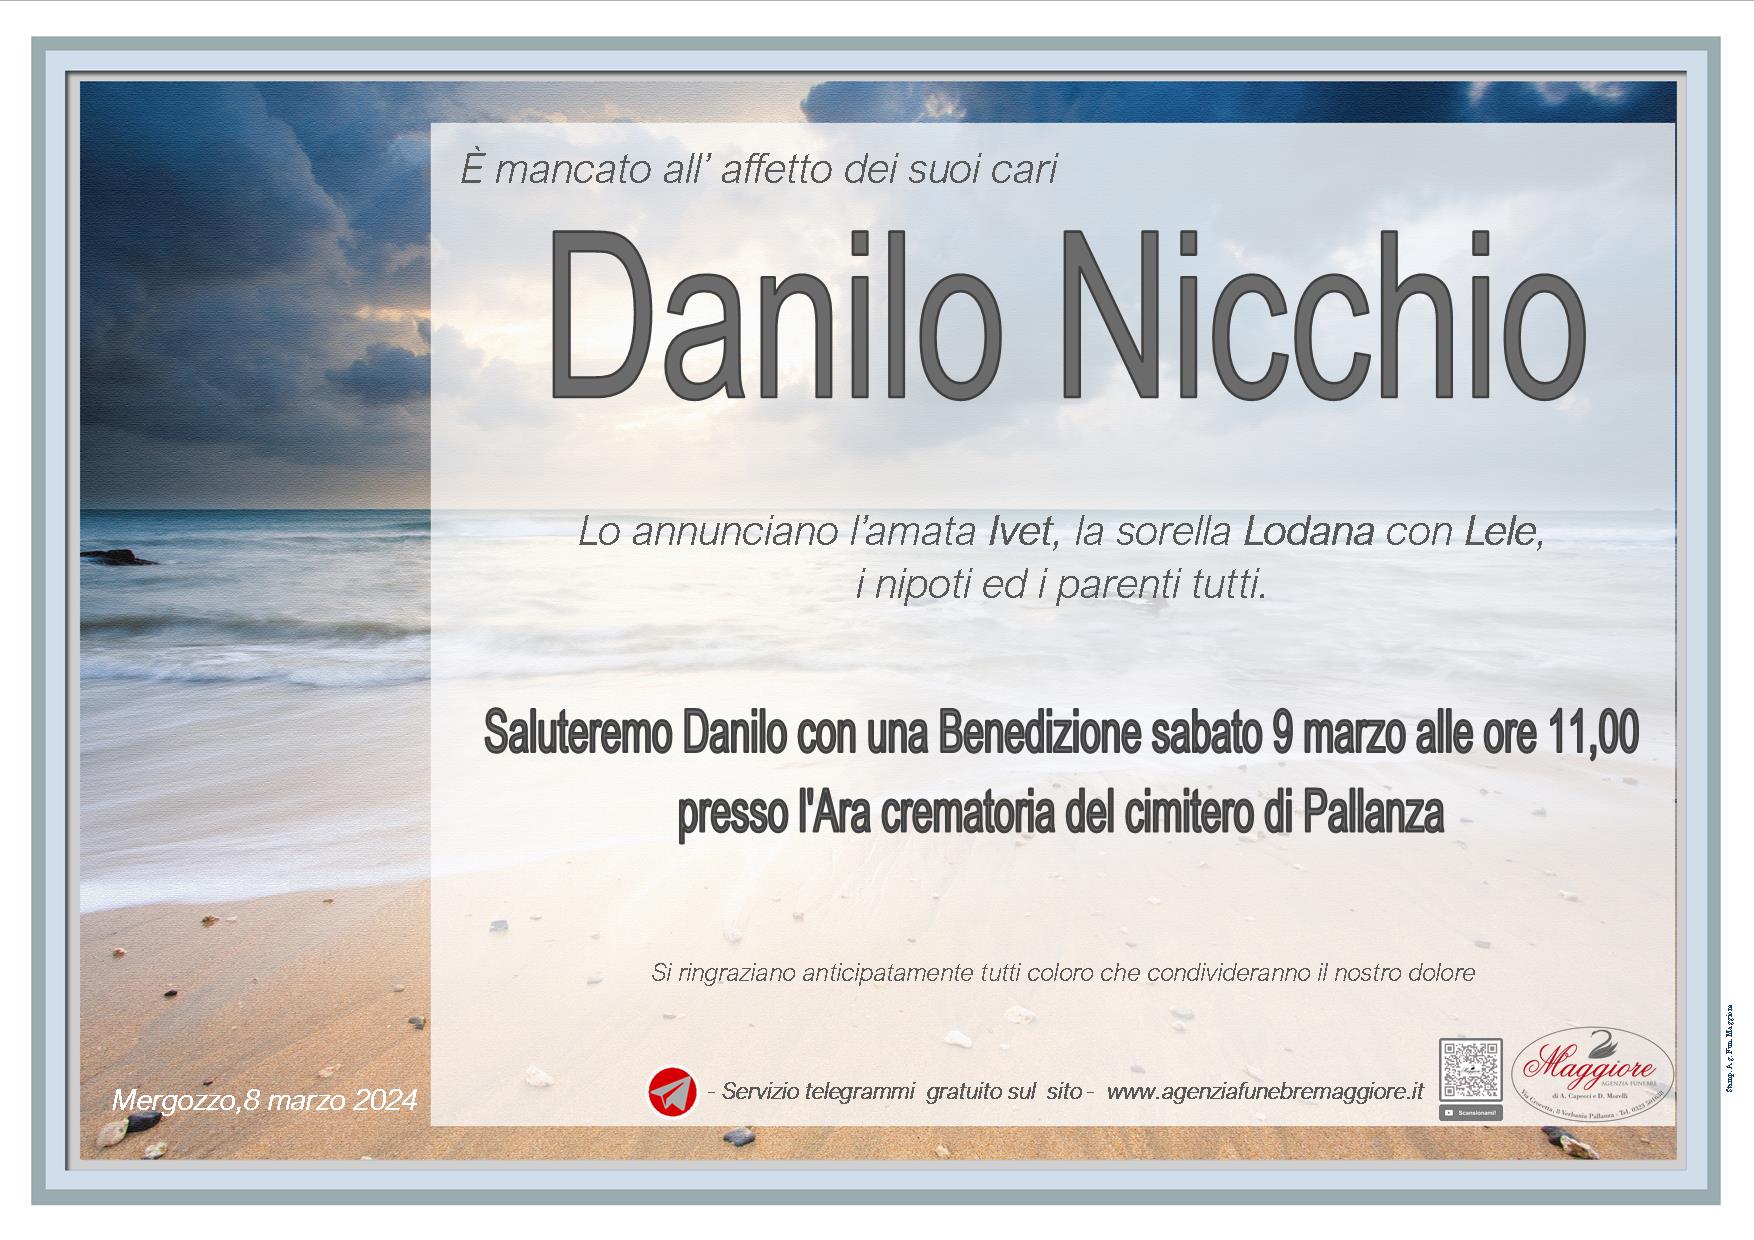 Danilo Nicchio